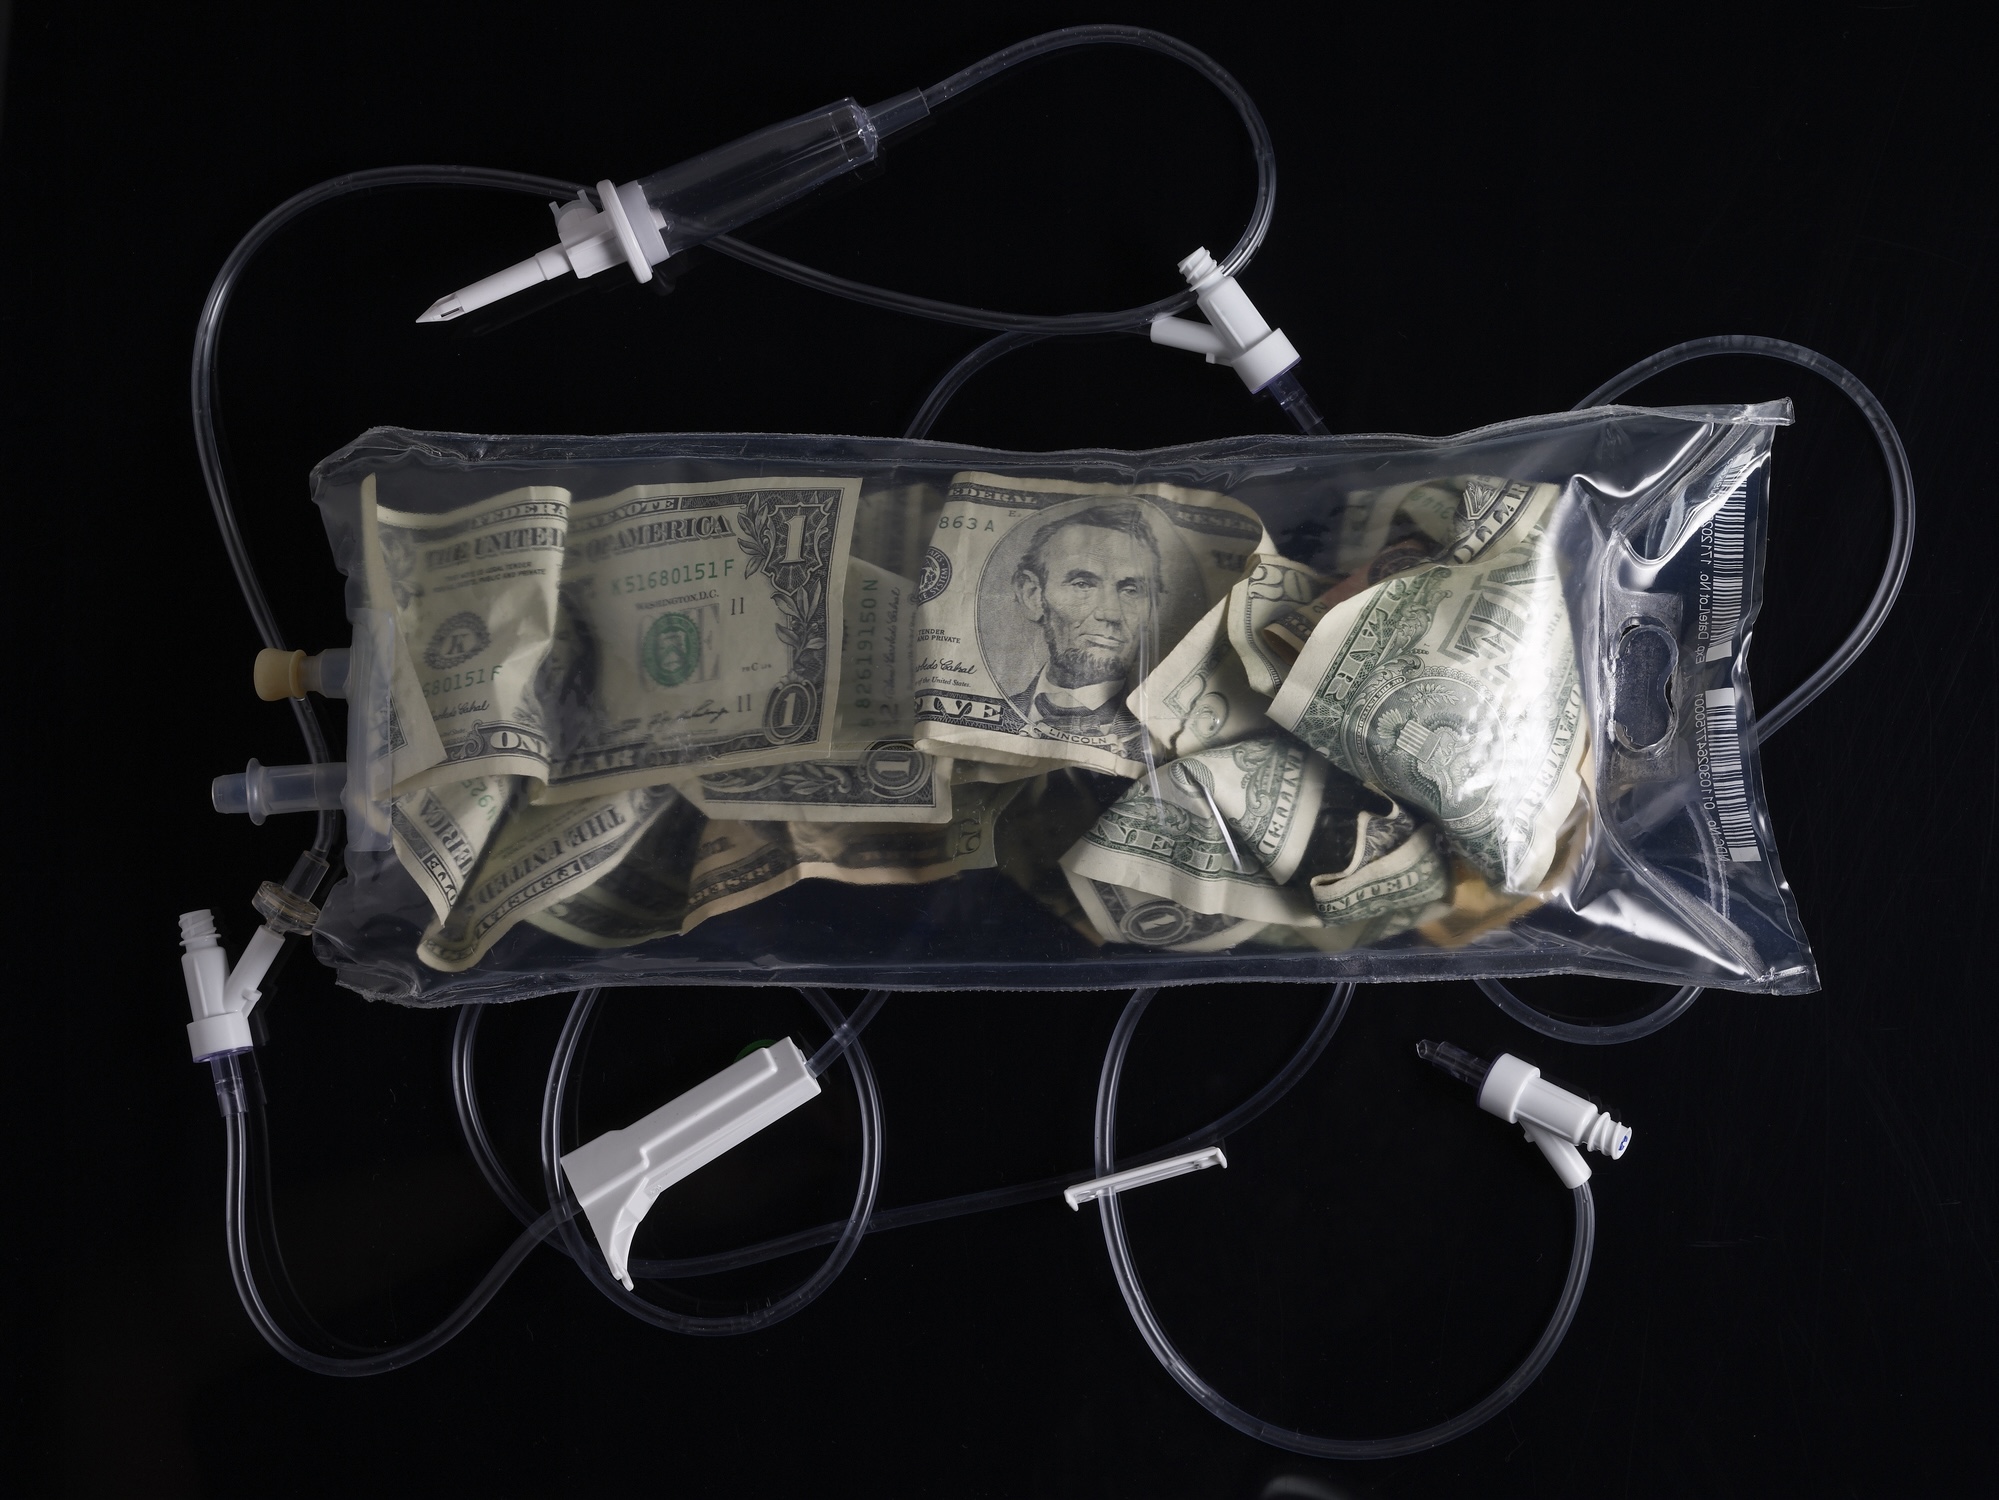 Plazmaadás pénz, átlátszó tasakban, amely jelképezi, hogy a vérplazma értékes